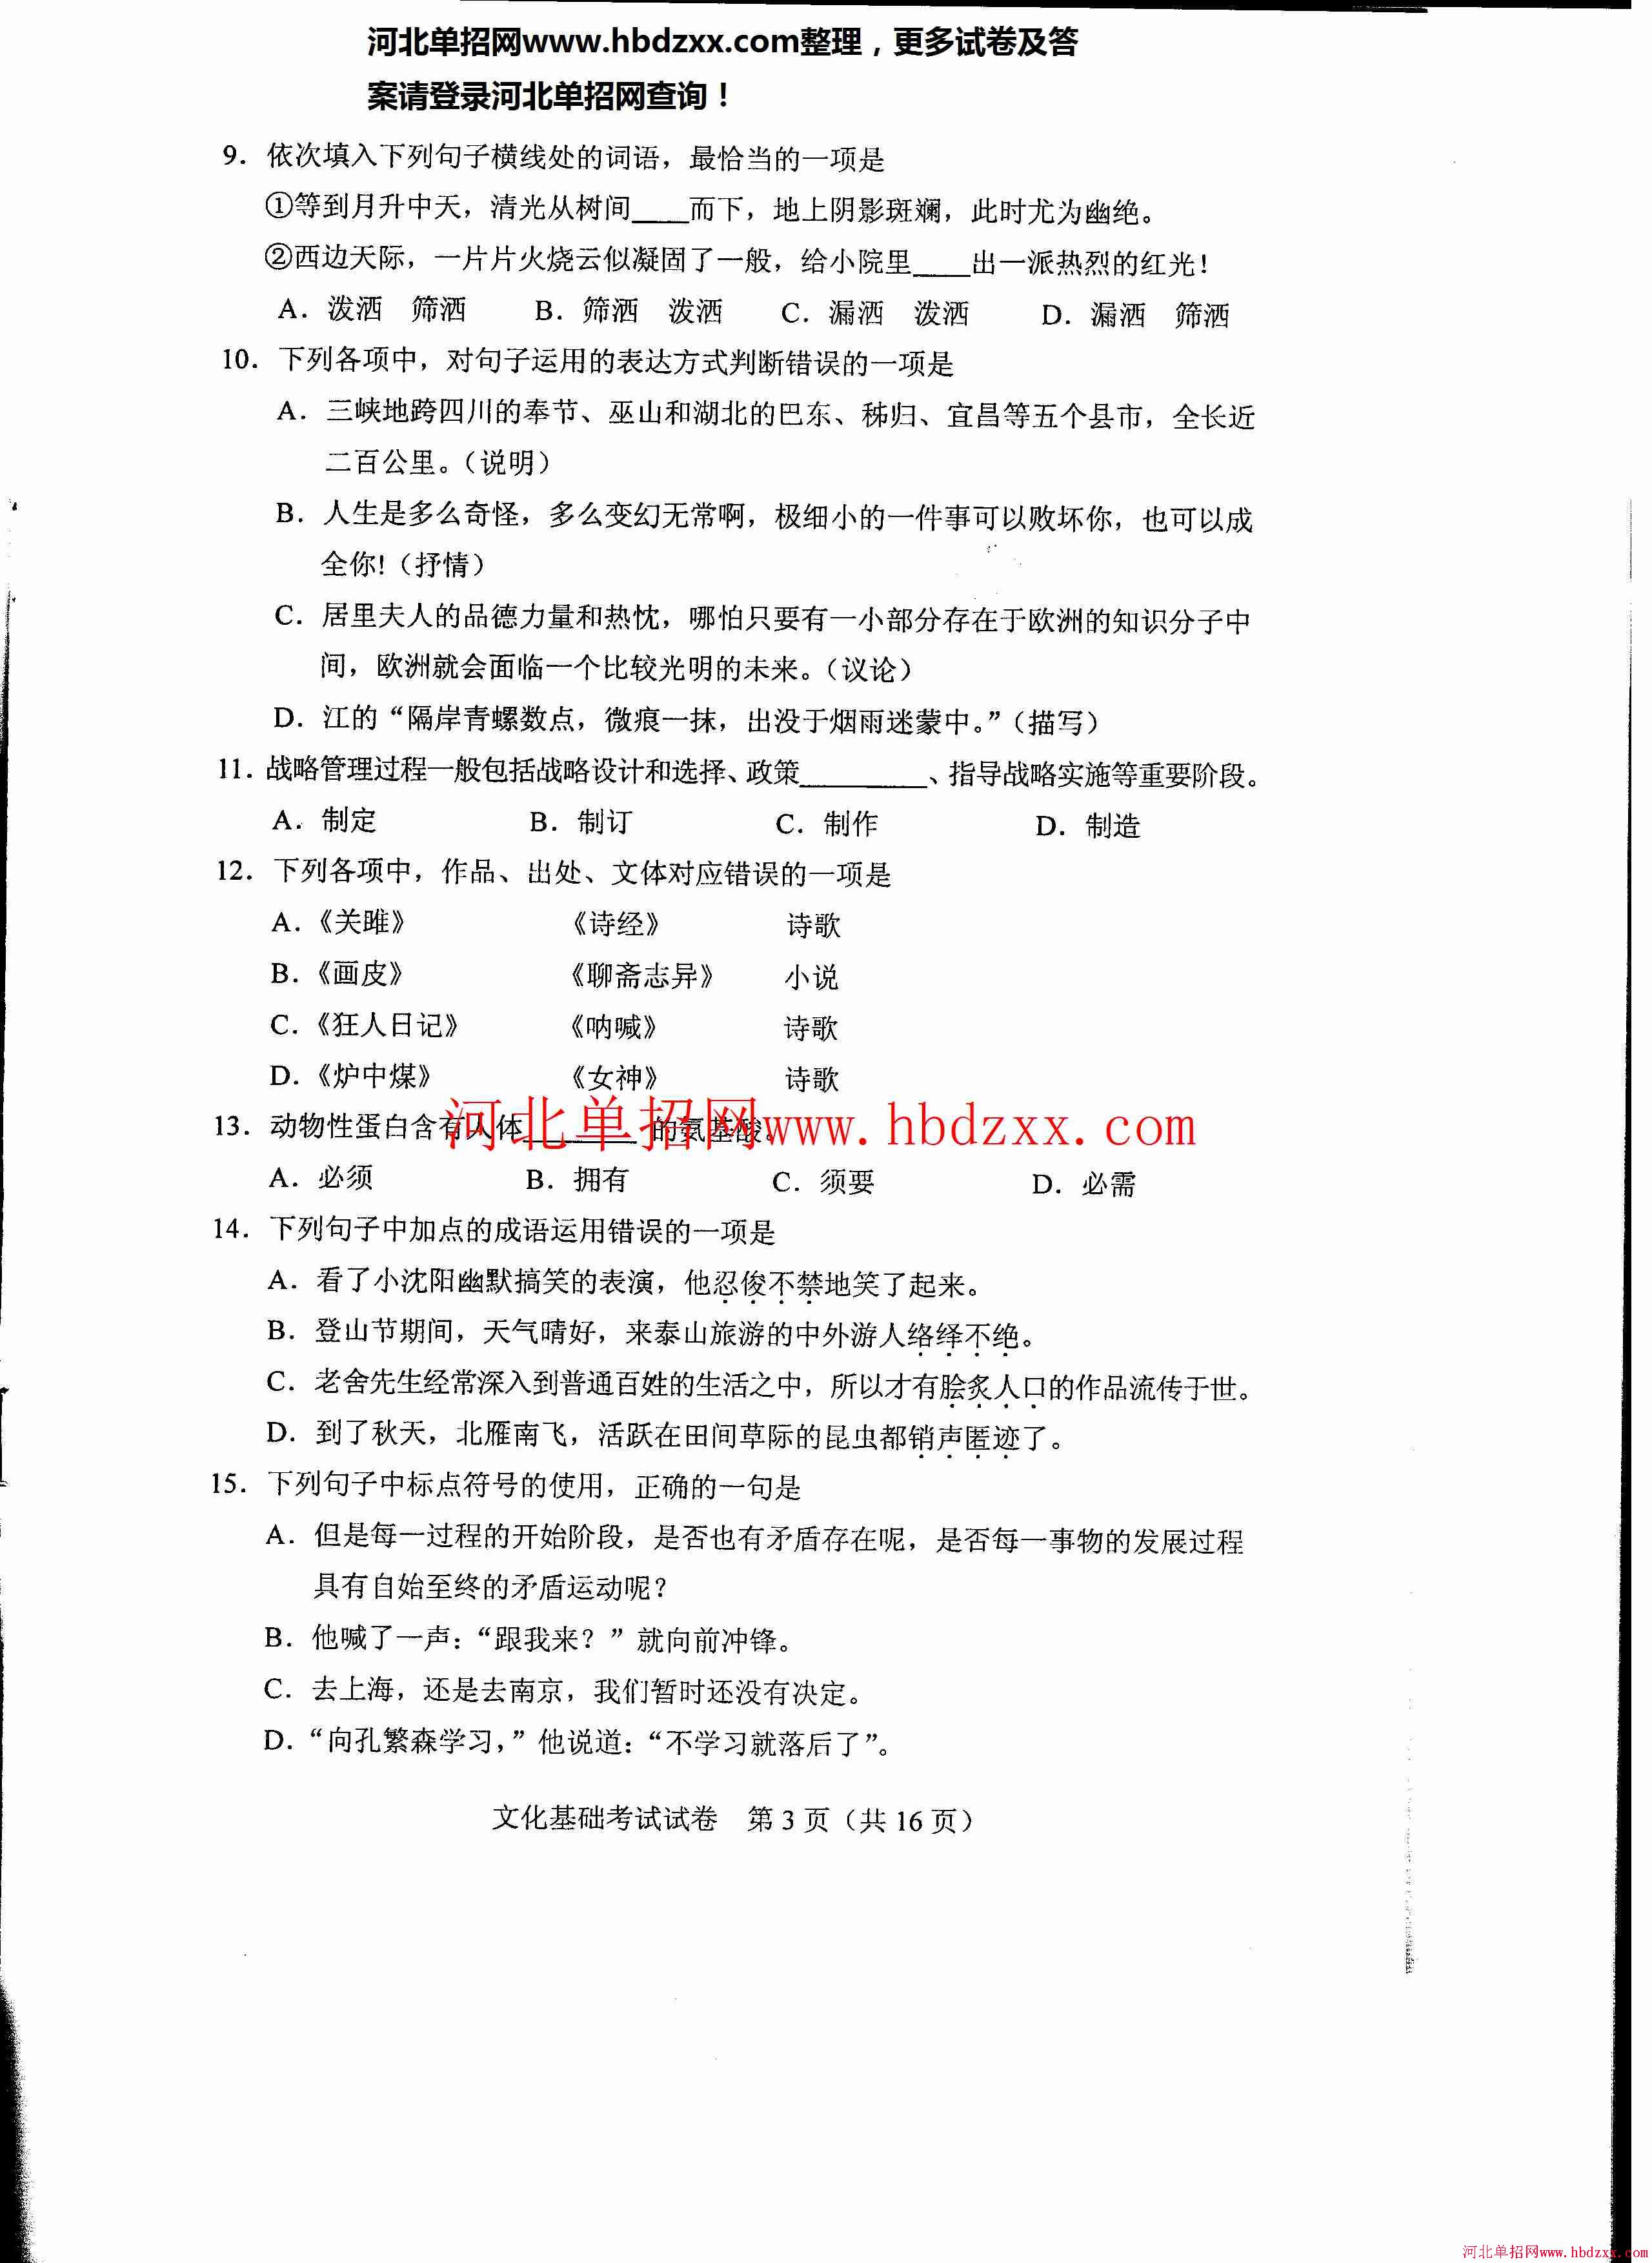 2015年河北省医学卫生类（临床医学类除外）单招联考试卷 图3